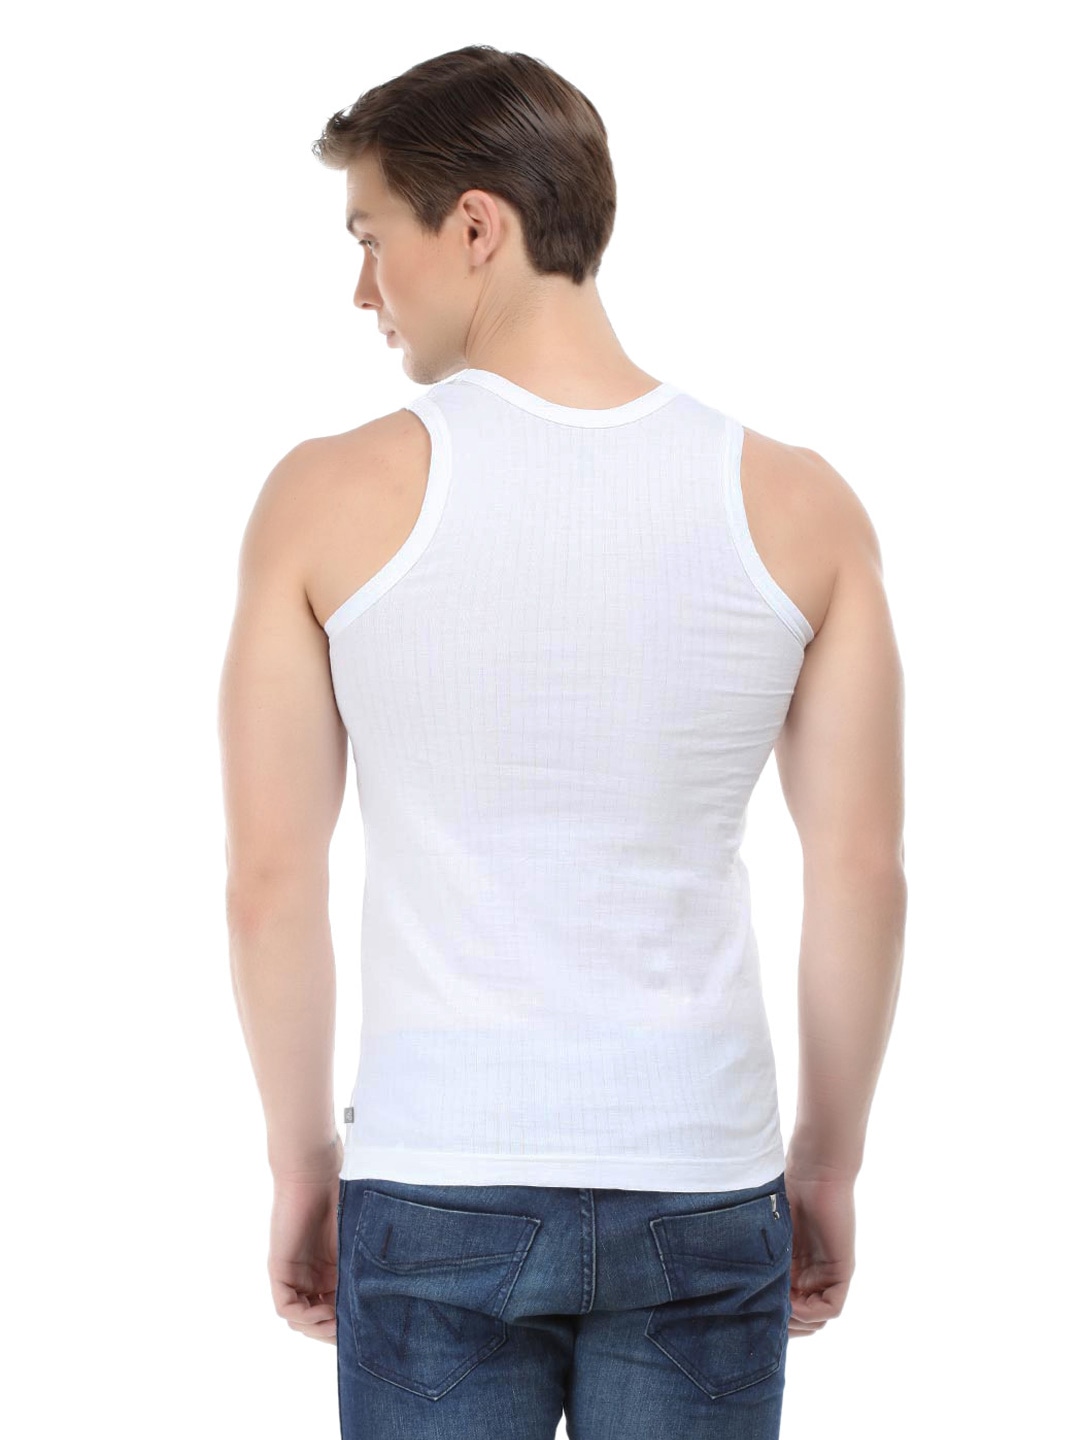 Clothing Innerwear Vests | Jockey COMFORT PLUS Men White Innerwear Vest (Pack of 2) 8816 - RC44034